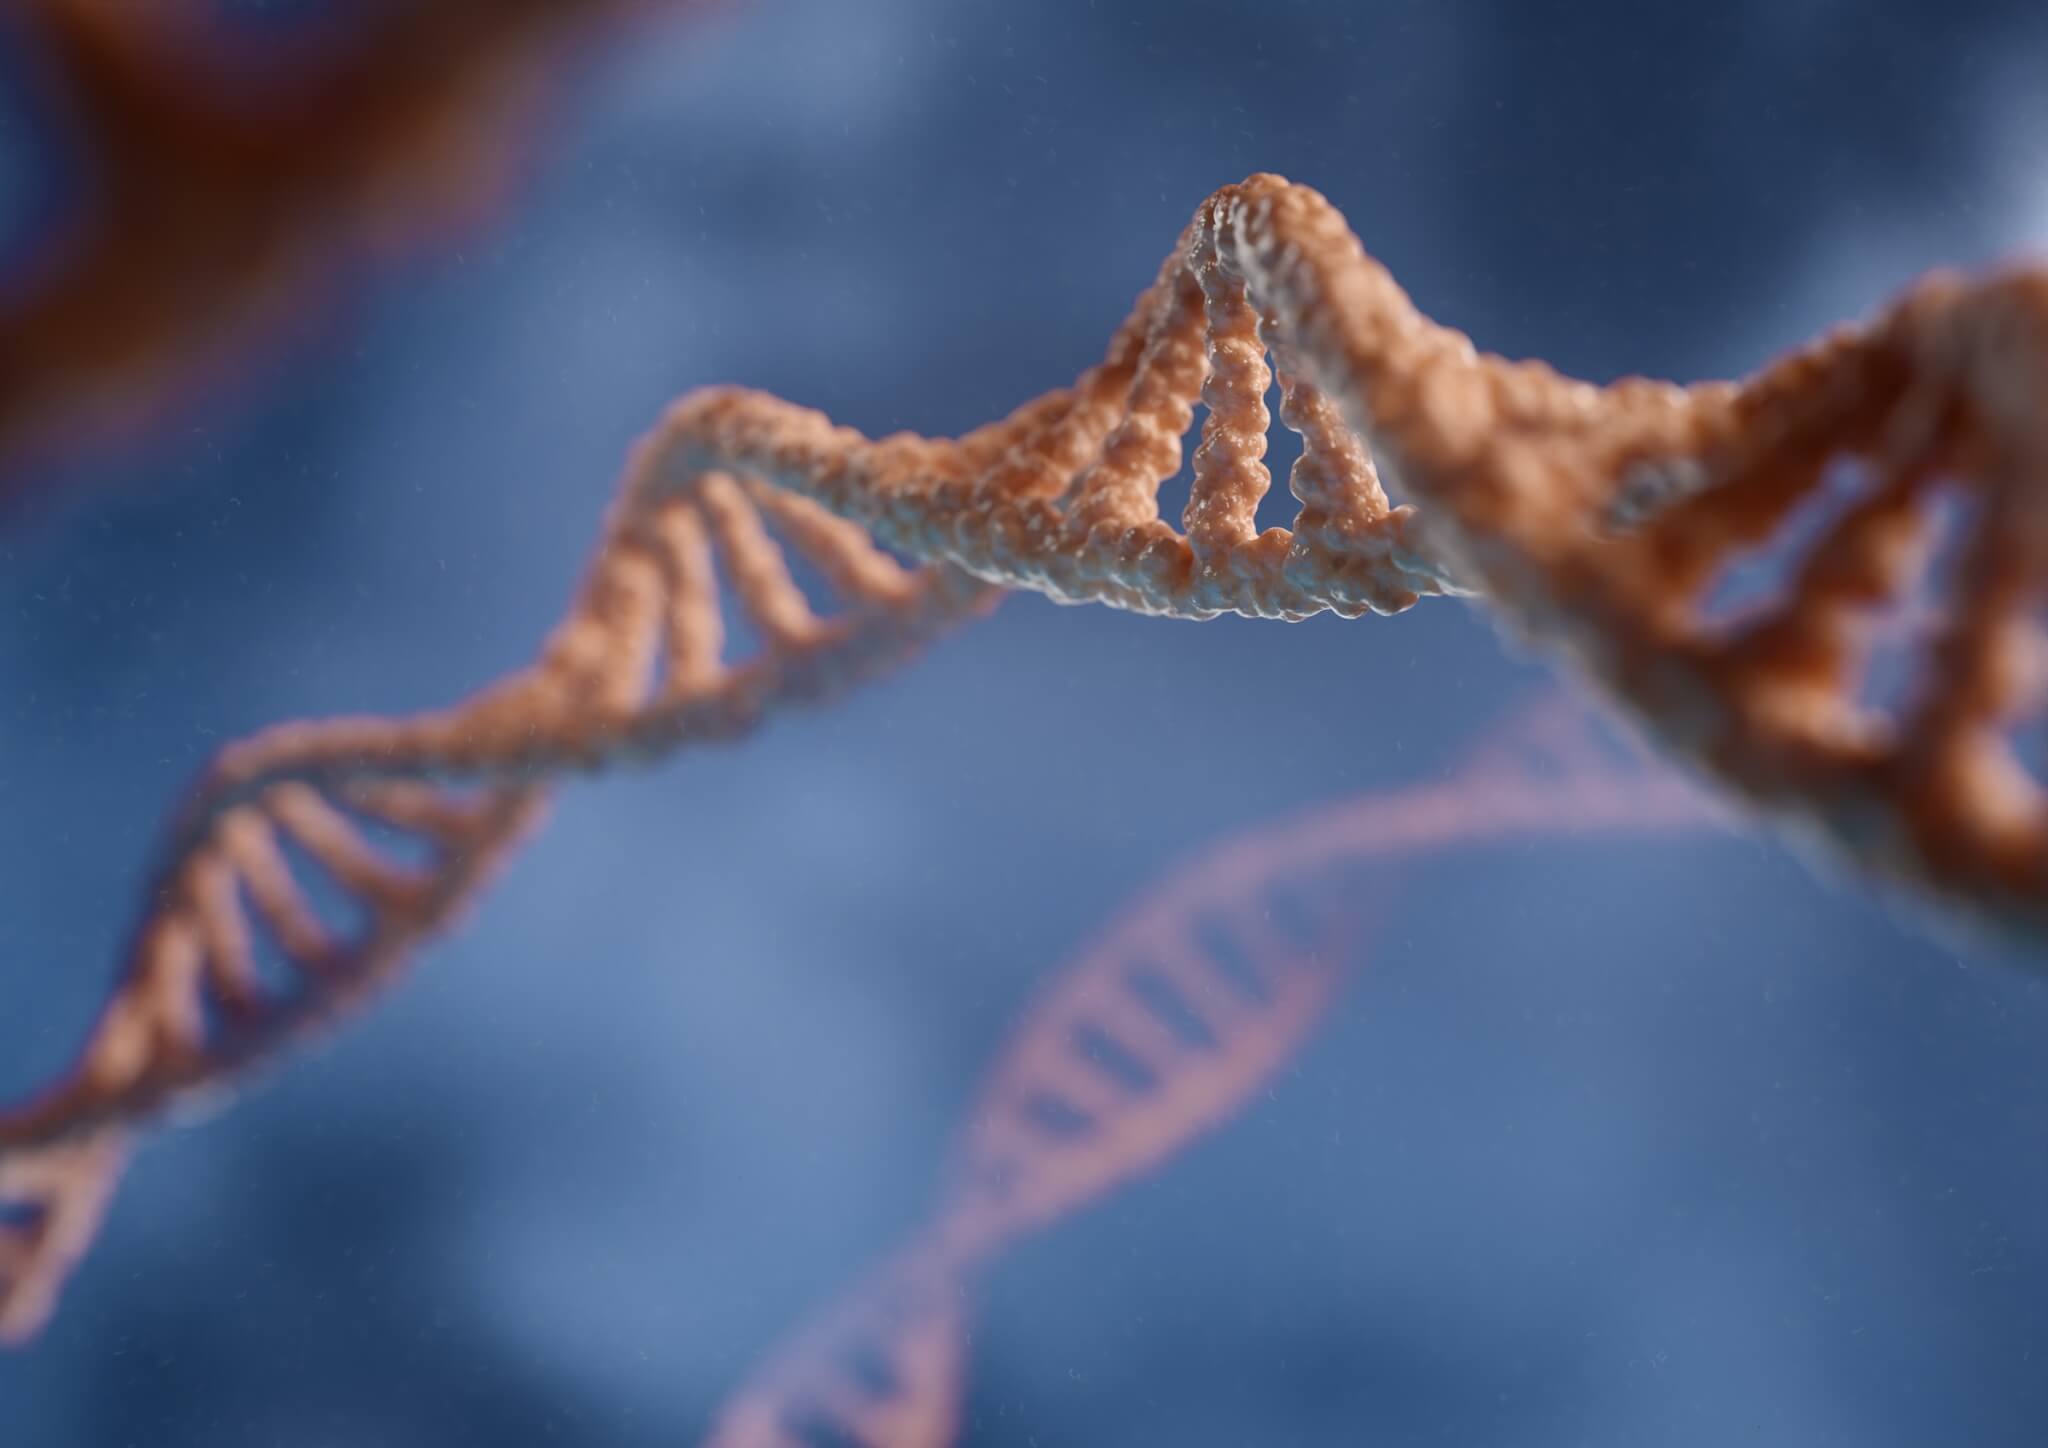 3D-weergave legt de dubbele helixstructuur van DNA vast tegen een blauwe achtergrond, waardoor de complexe schoonheid van de genetische code van het leven wordt benadrukt